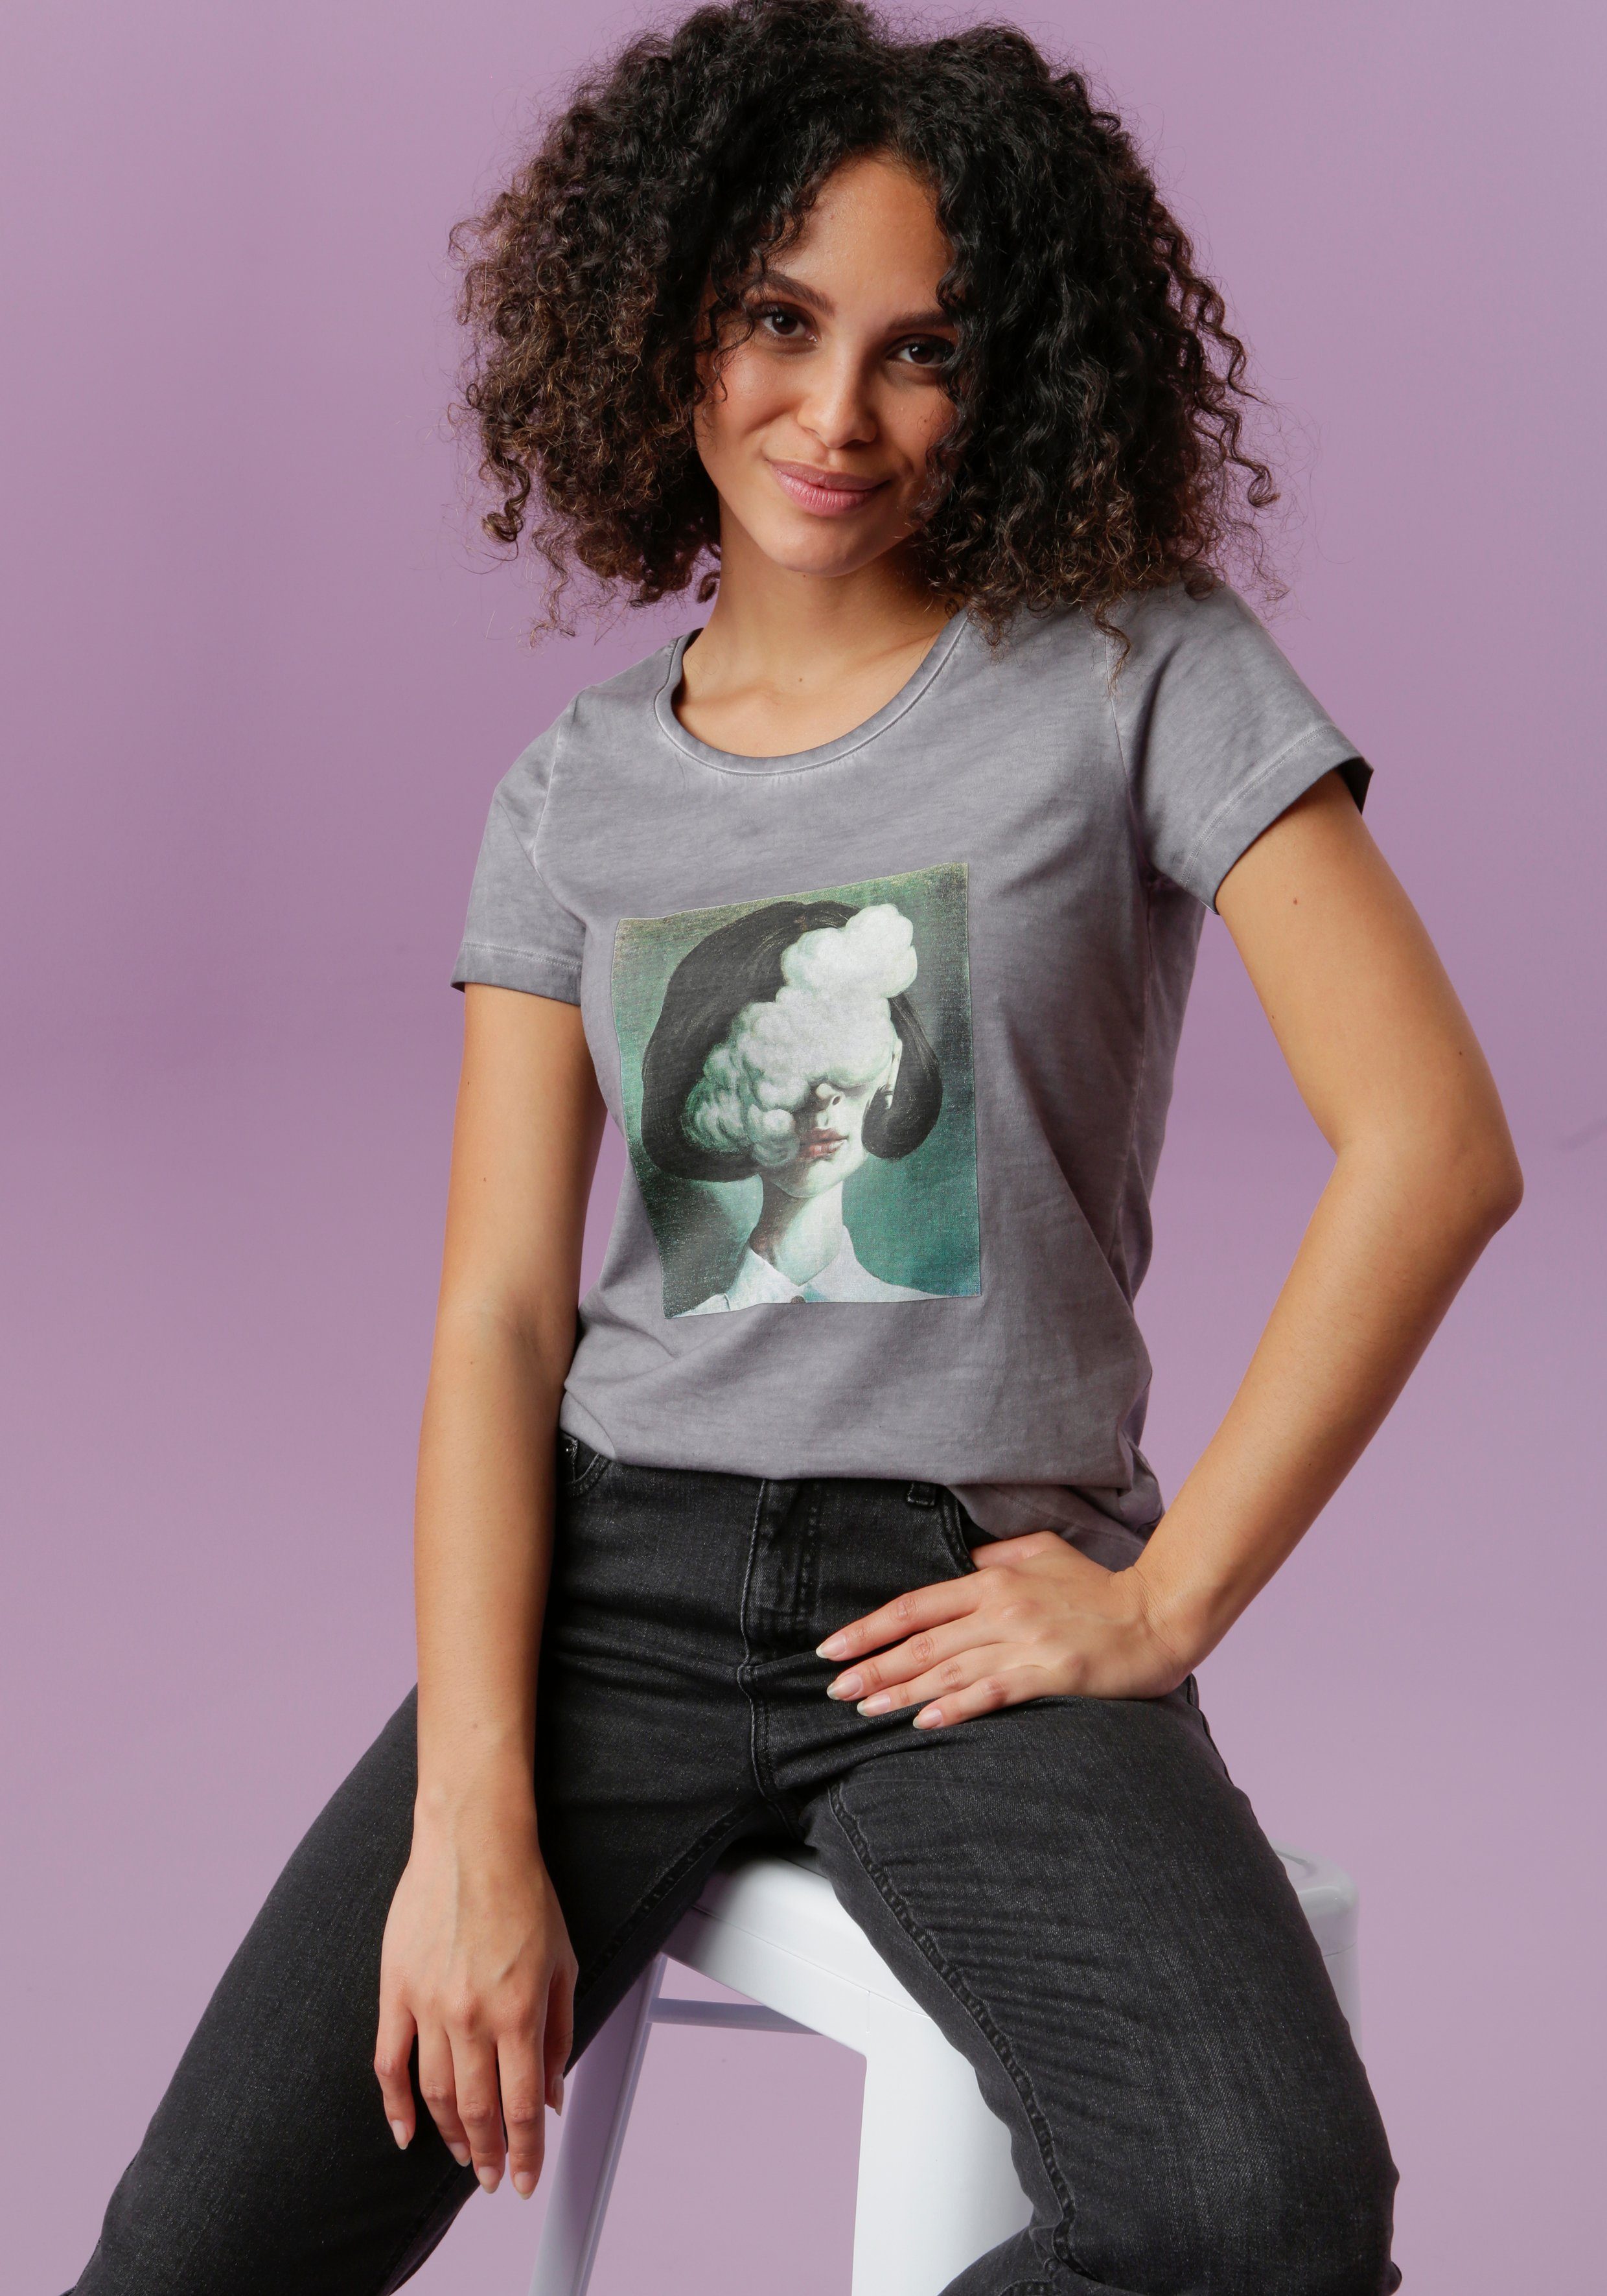 Kaufen Sie beliebte Artikel online Aniston CASUAL T-Shirt Frontdruck extravagantem mit